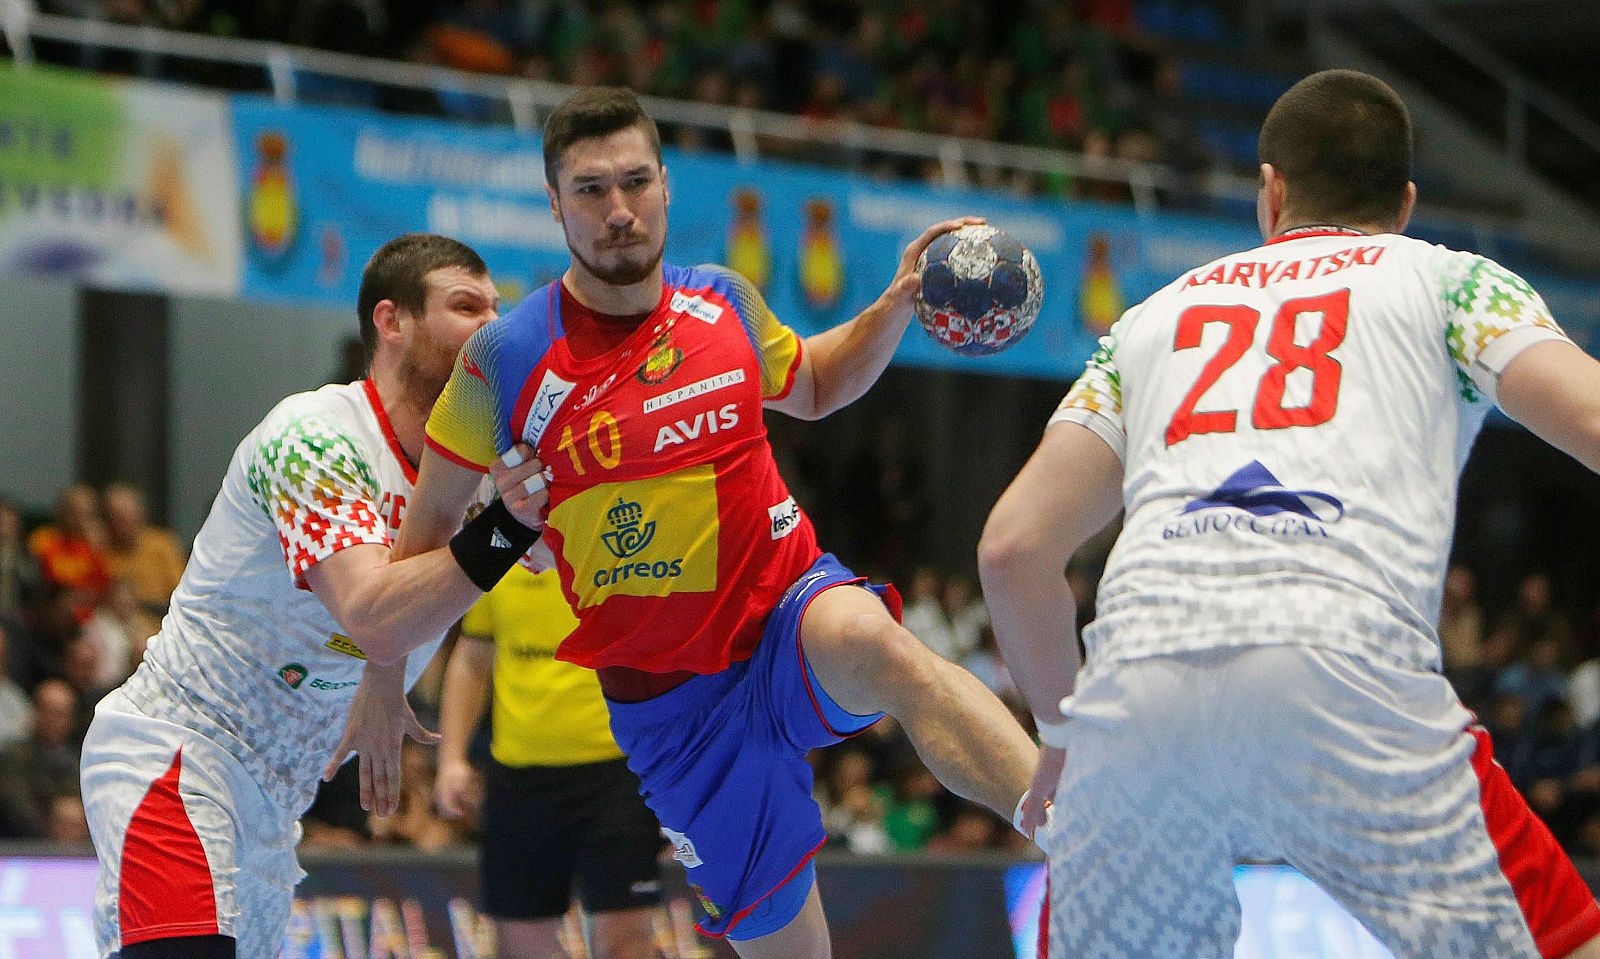 El jugador español Dujshebaev (c), pugna por un balón con el jugador bielorruso Karvatski (d).